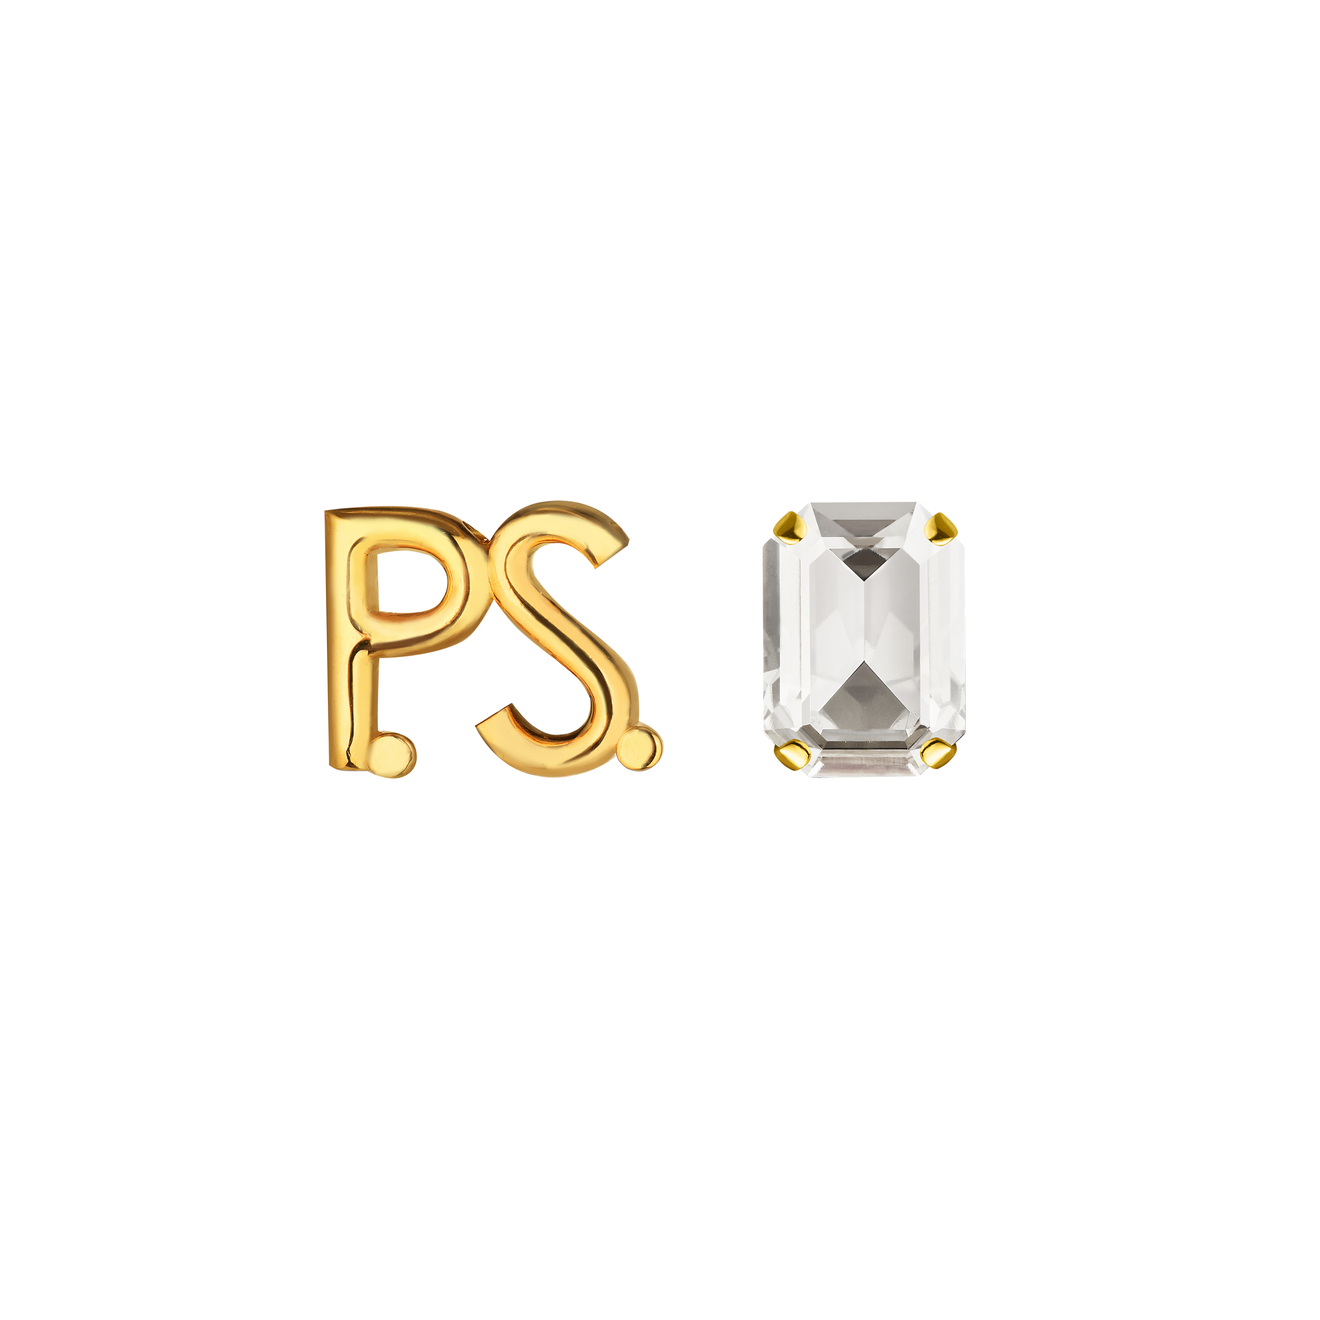 Phenomenal Studio Позолоченные серьги с фирменным логотипом и крупным кристаллом P.S. Crystal Gold phenomenal studio чокер с фирменным логотипом и кристаллами p s mini rhodium necklace